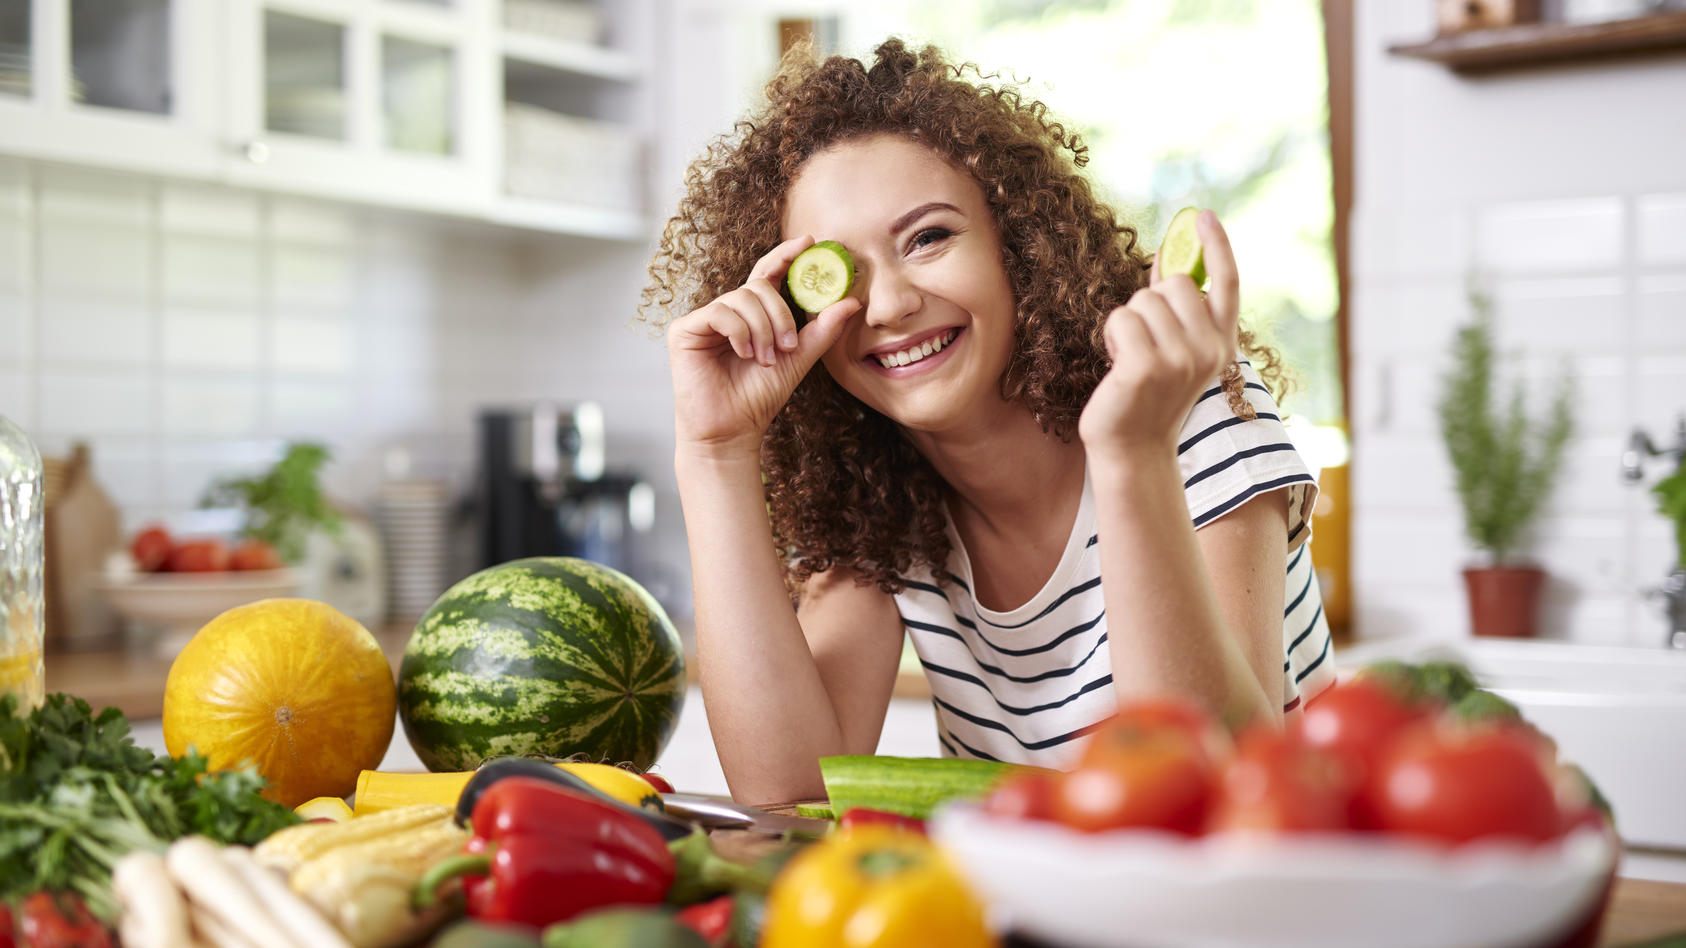 Obst und Gemüse gehören zu einer ausgewogenen Ernährung dazu.